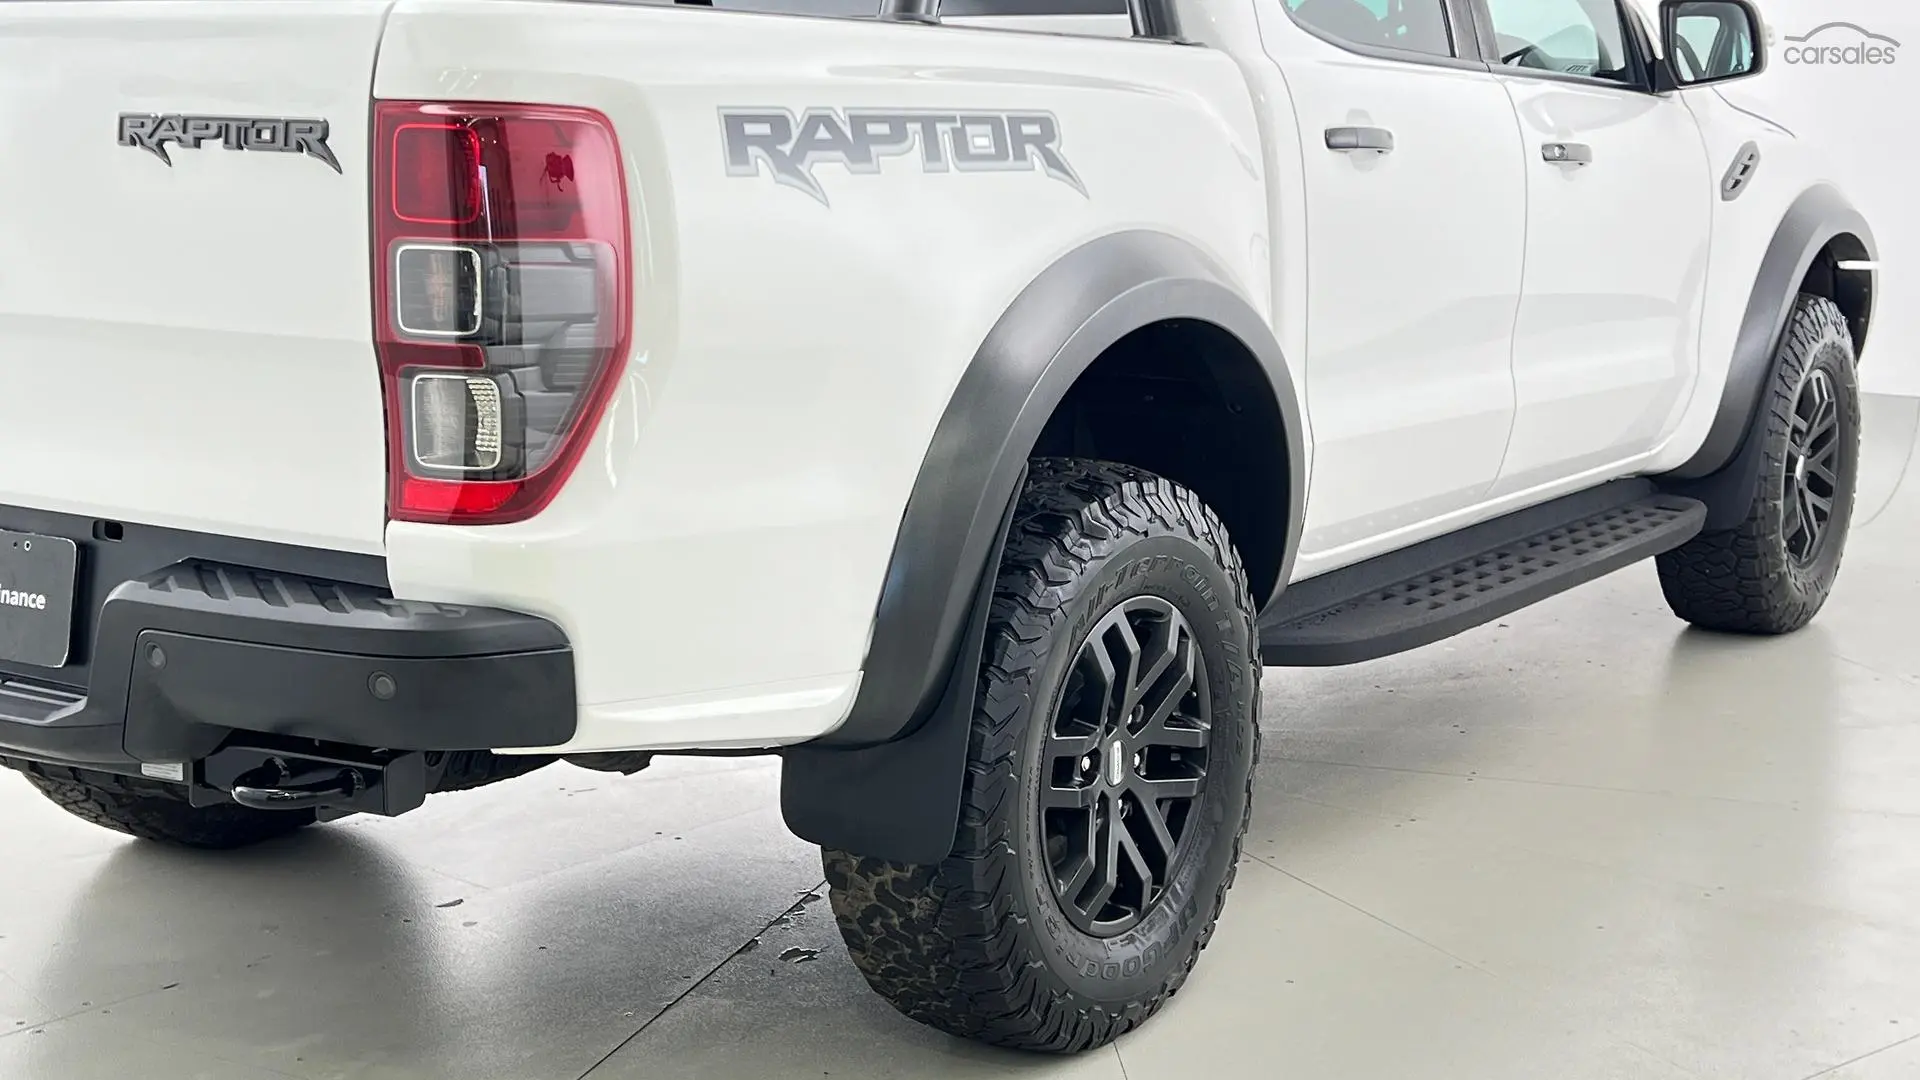 2019 Ford Ranger Image 12